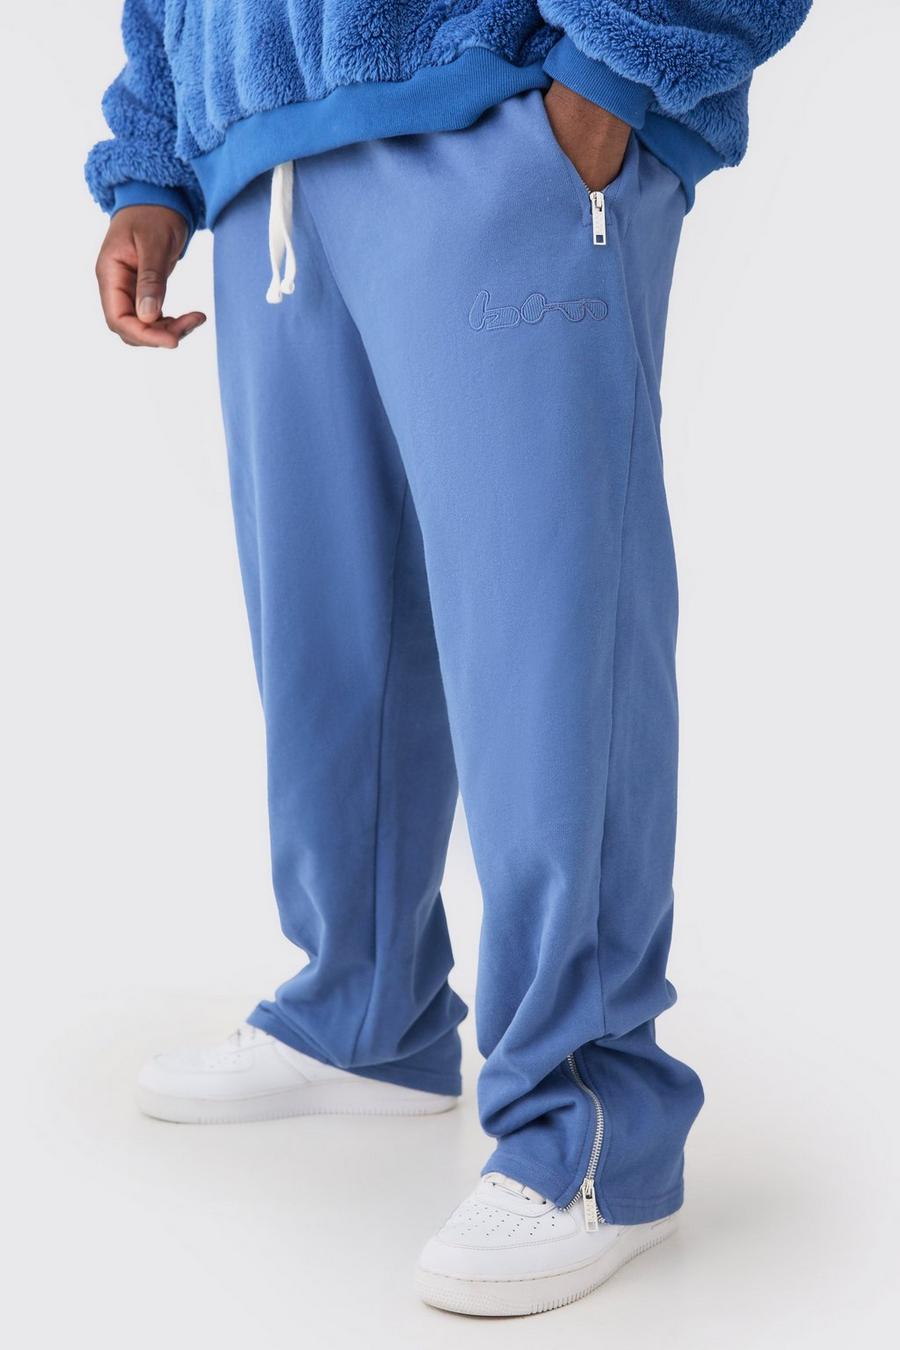 Pantalón deportivo Plus oversize de tela rizo con aplique y cremallera, Blue